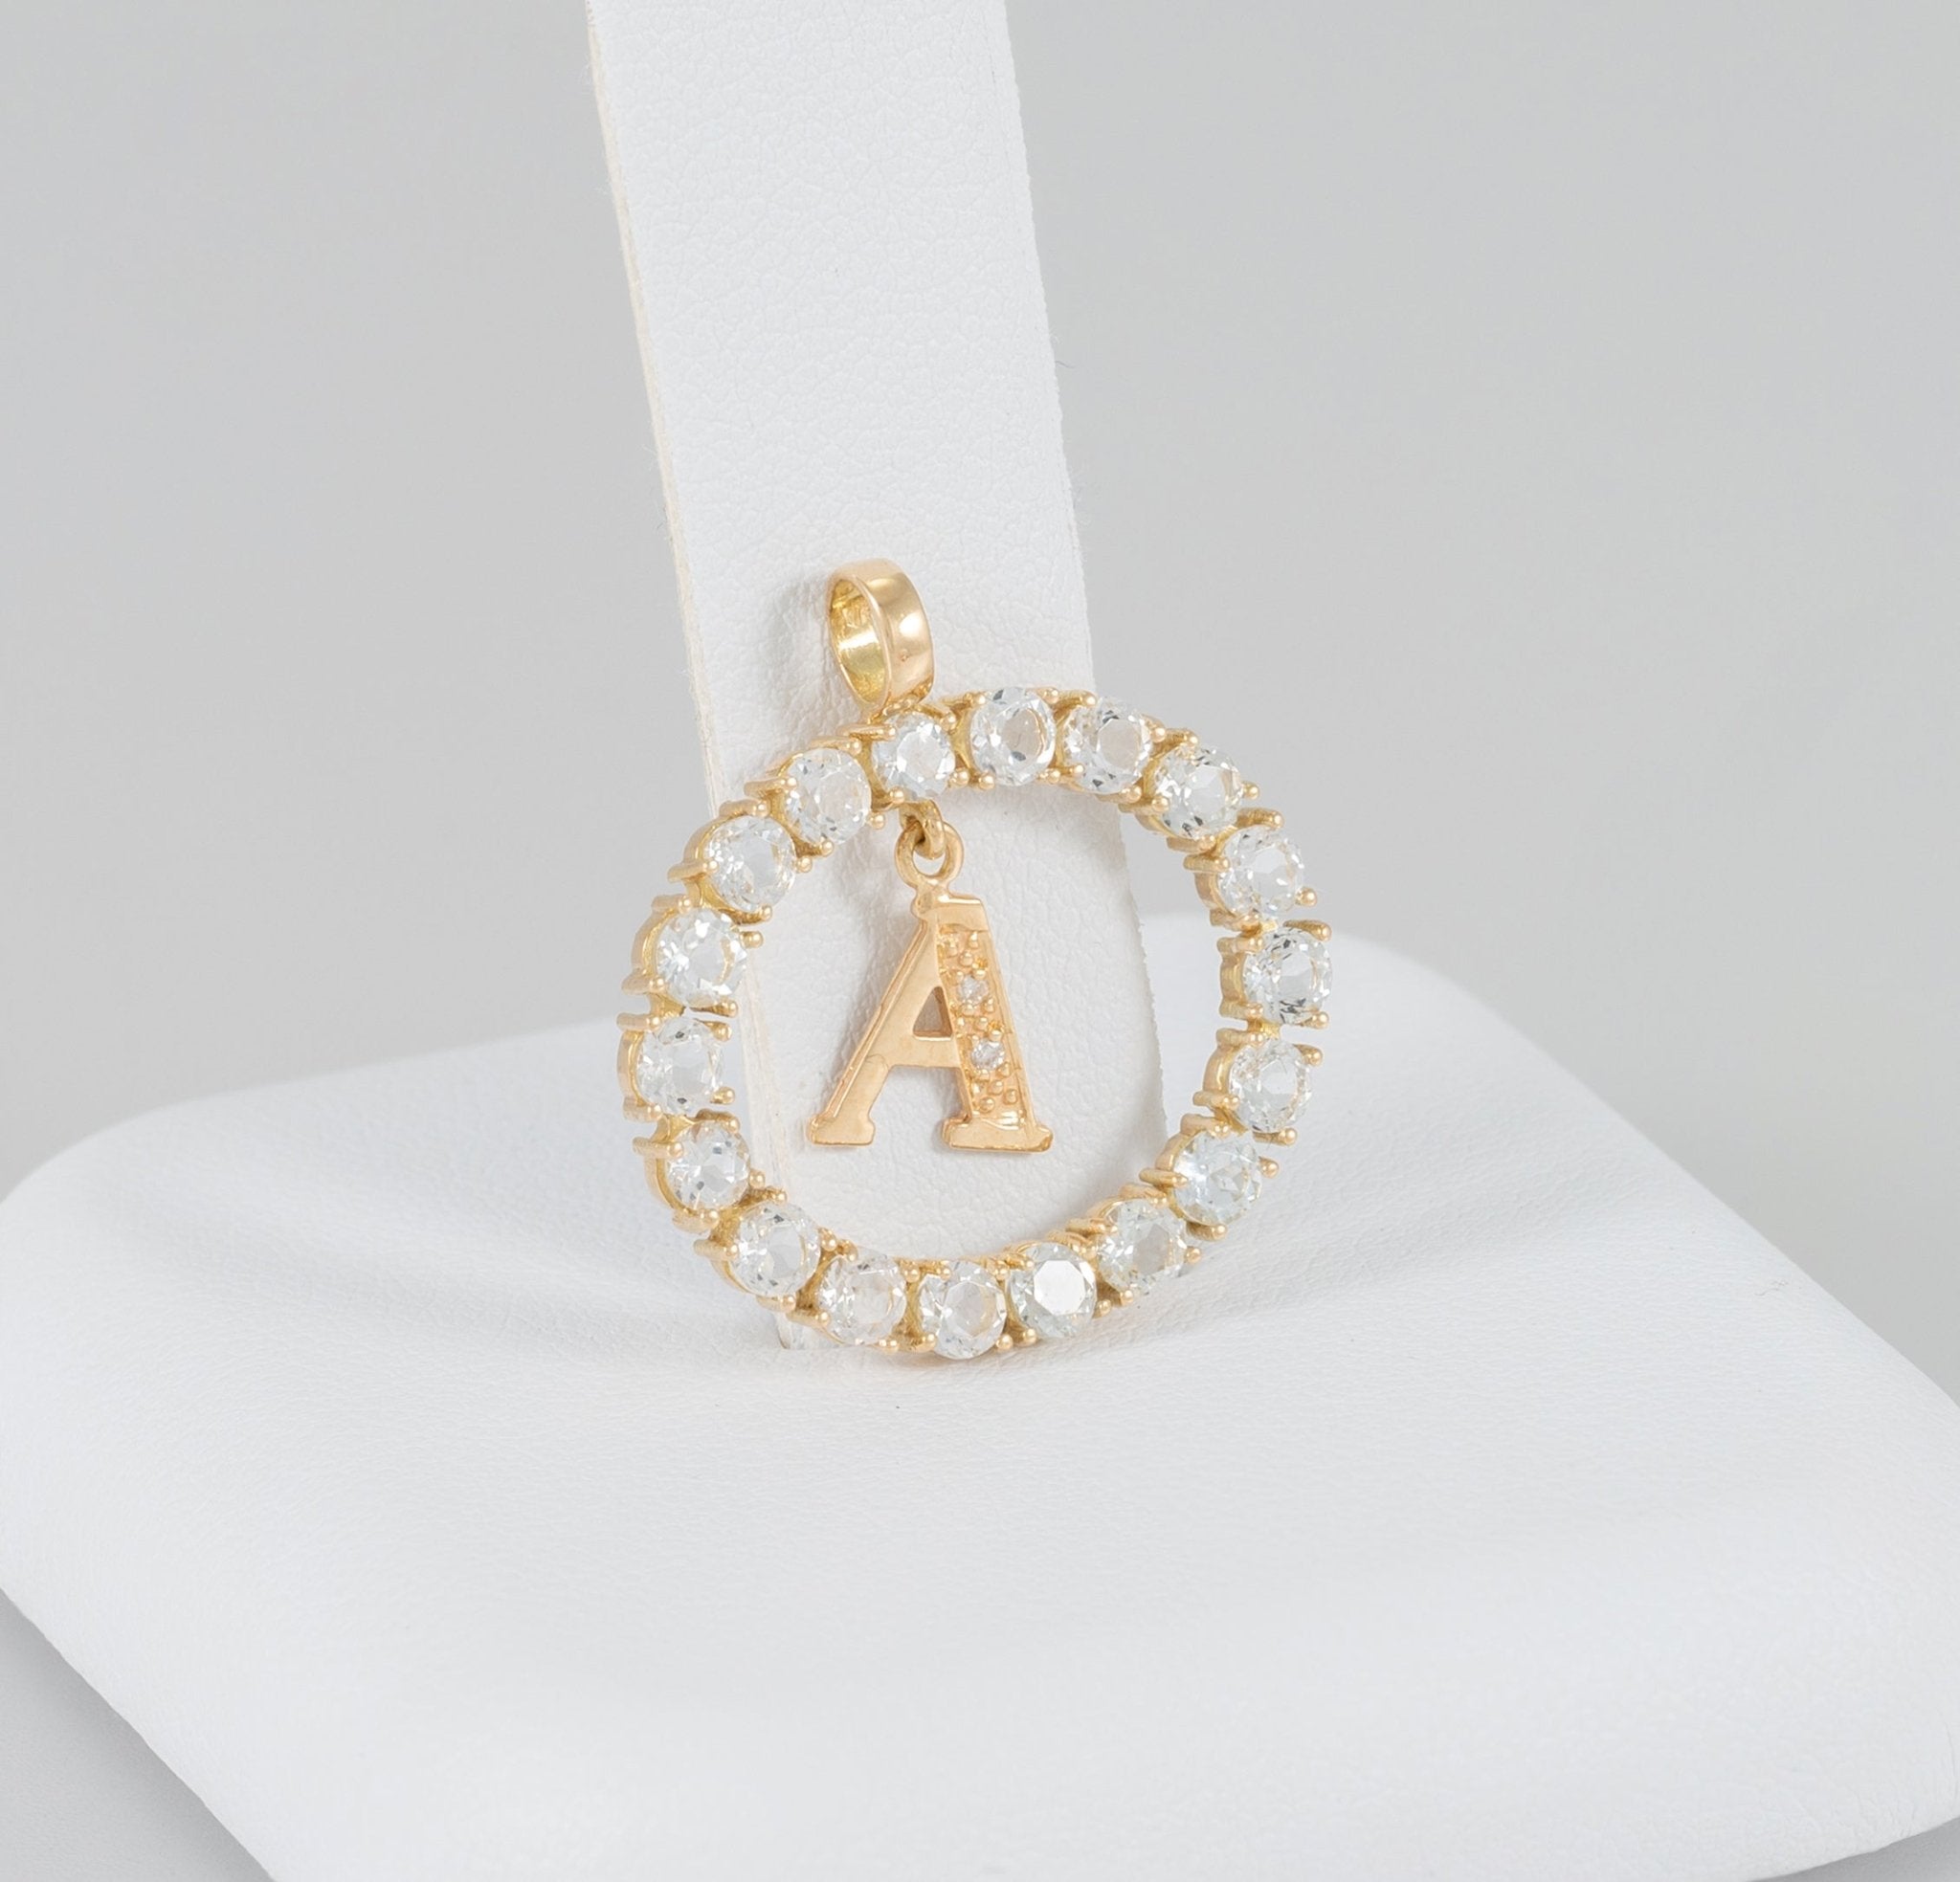 Collar y colgante letra A con perlas corales y oro amarillo 18k - Mayka Jewels